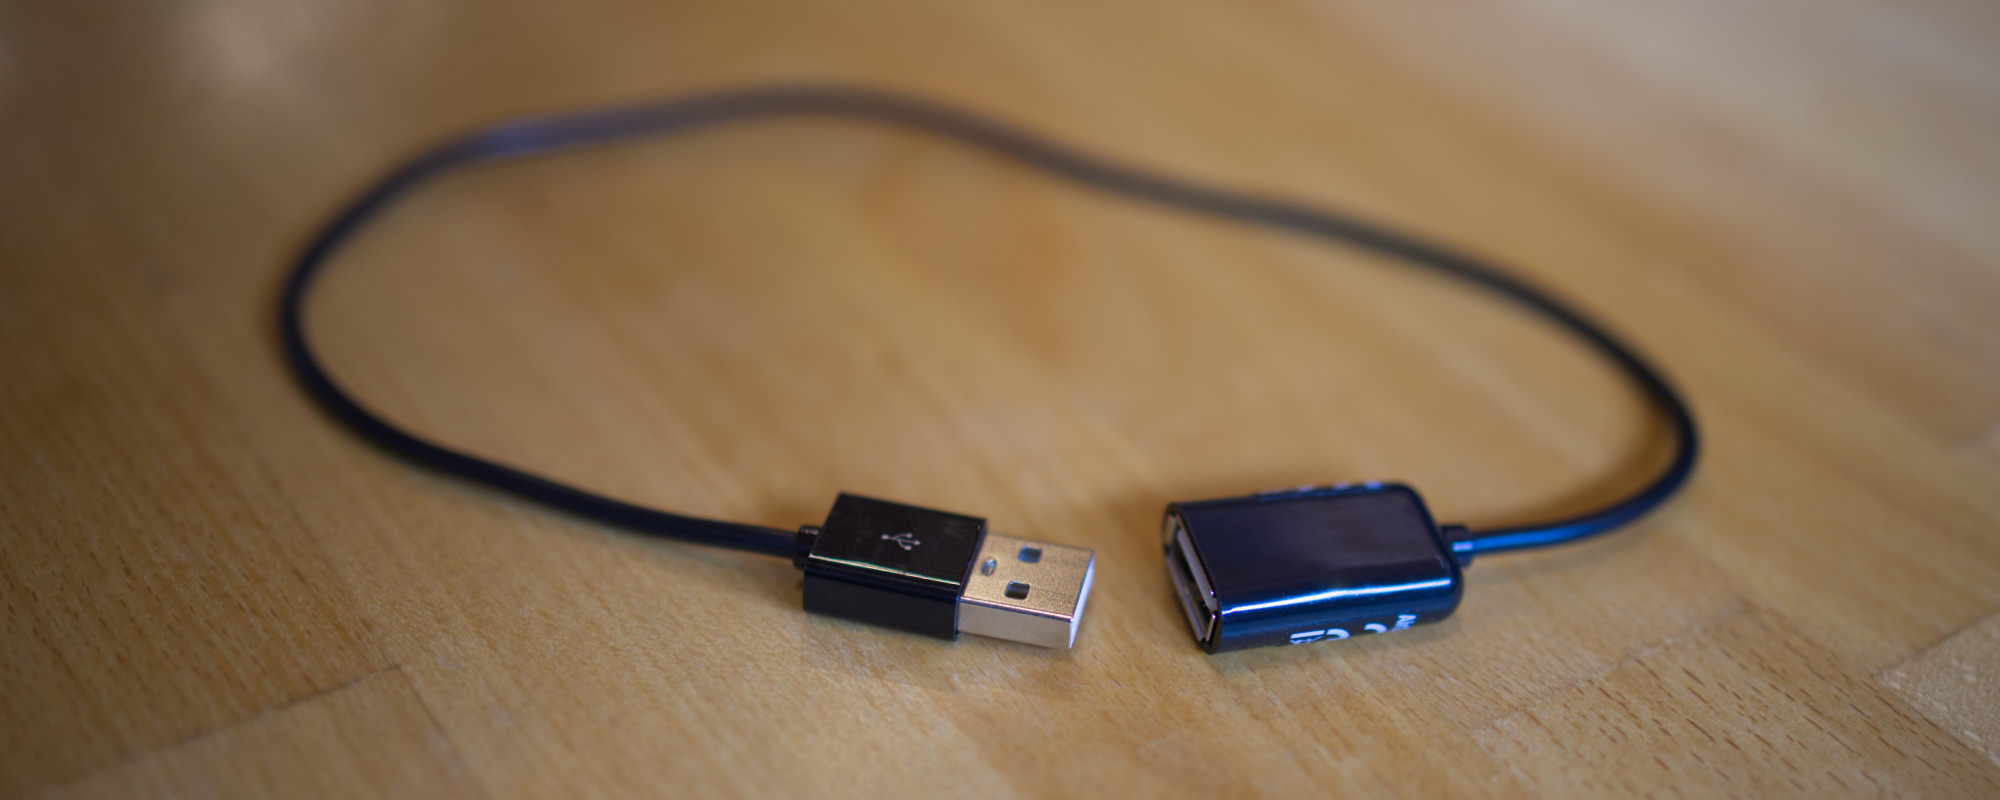 USB-WLAN-Keylogger in Form eines USB-Verlängerungskabel